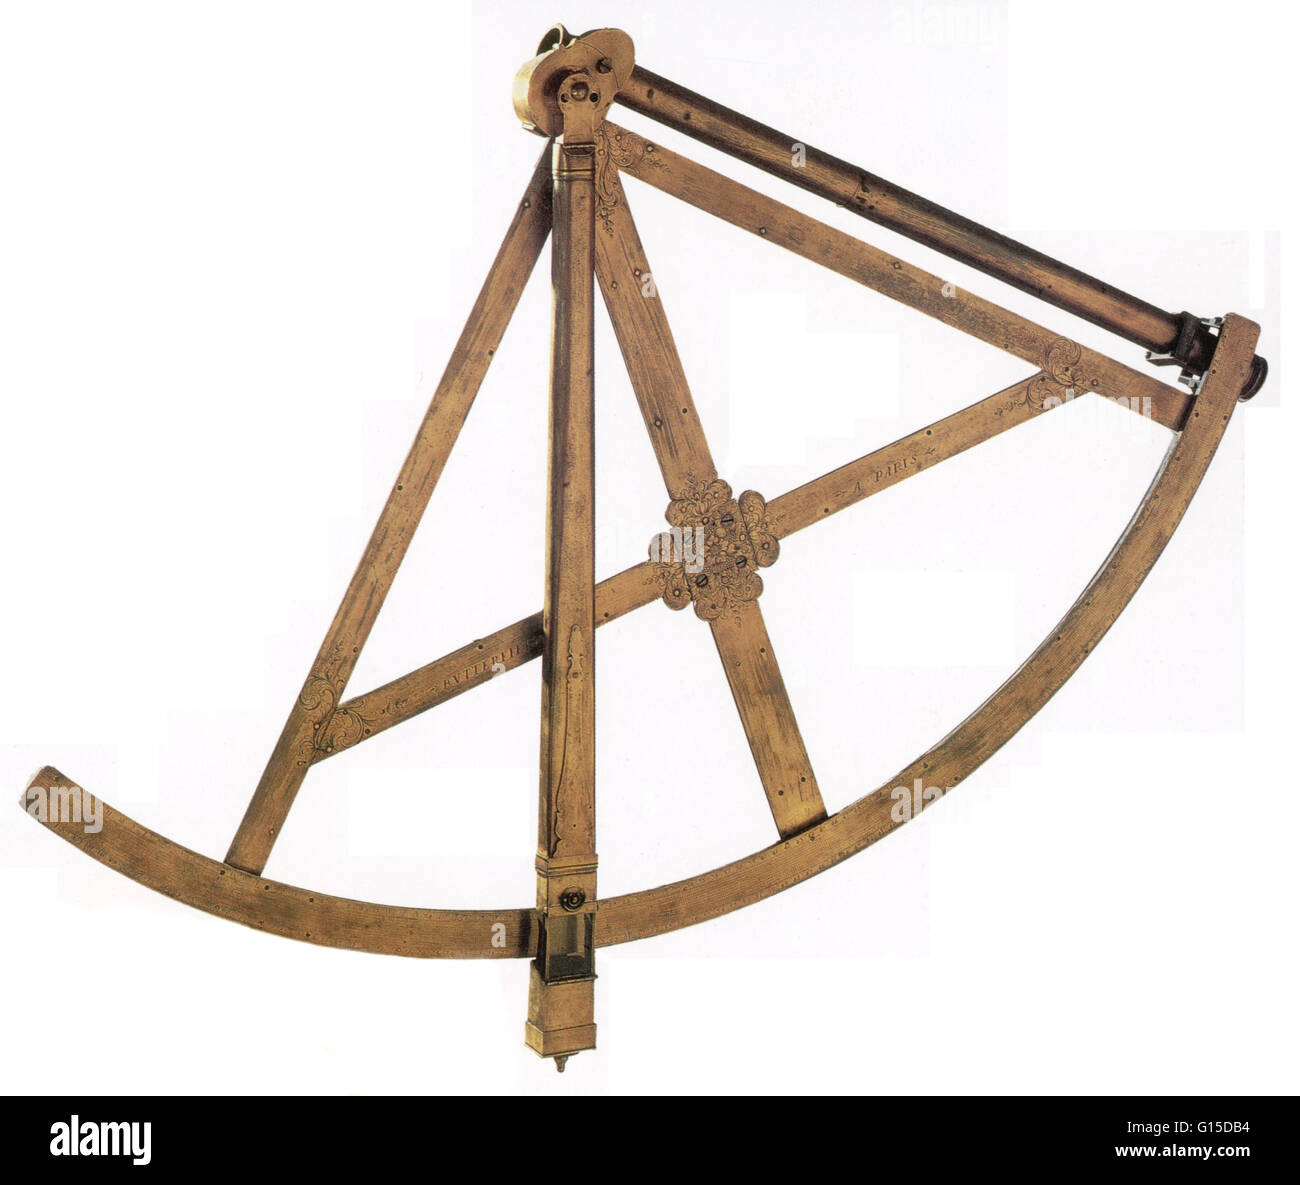 Quadrant astronomique en laiton a été réalisé à Paris à la fin du xviie au début du xviiie siècle. Il aurait été utilisé pour mesurer l'altitude d'étoiles. Banque D'Images